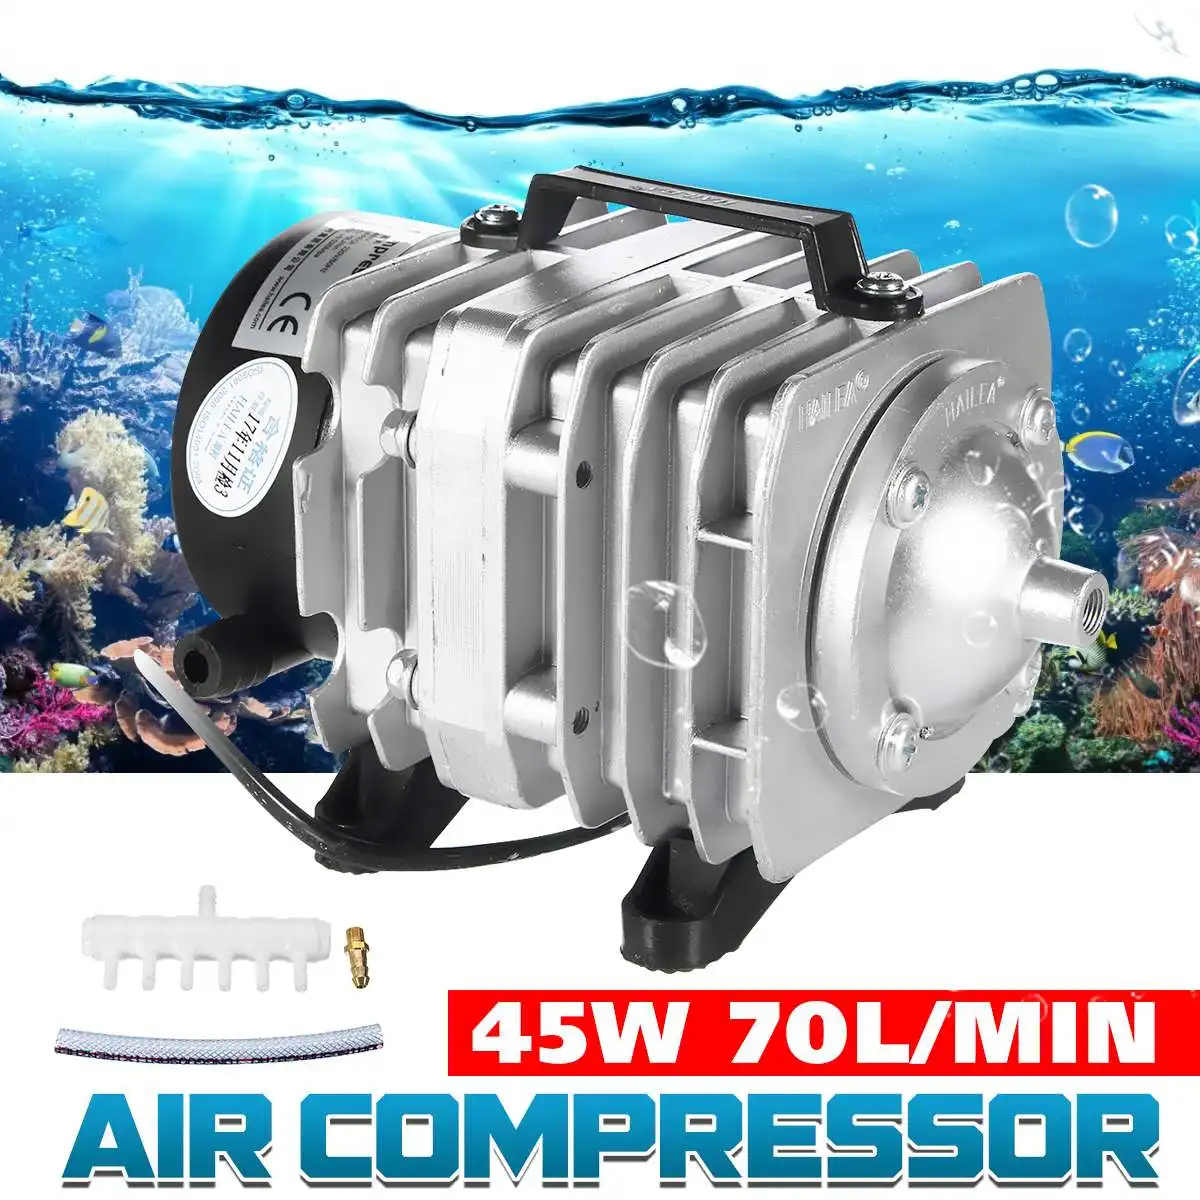 

Воздушный компрессор HAILEA, электромагнитный воздушный насос 25 Вт, 35 Вт, 45 Вт, 70 л/мин, для аквариума